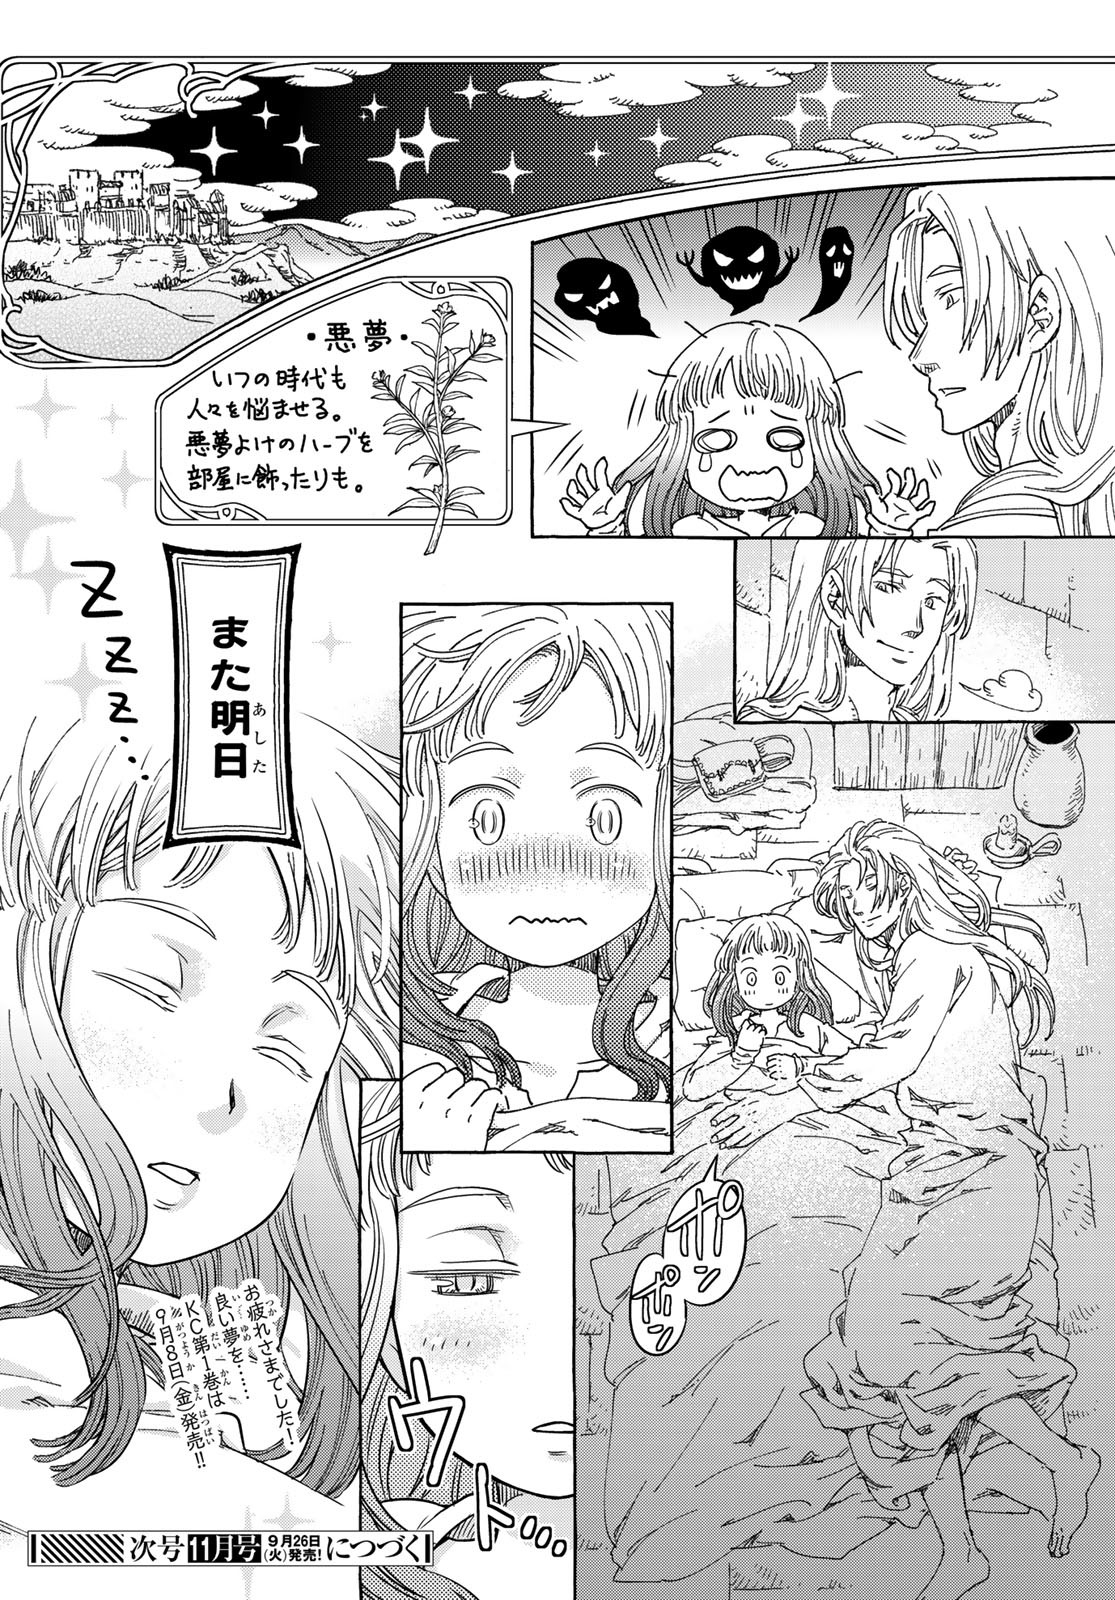 Mugou no Schnell Gear: Chikyuugai Kisouka AI - Chapter 49 - Page 8